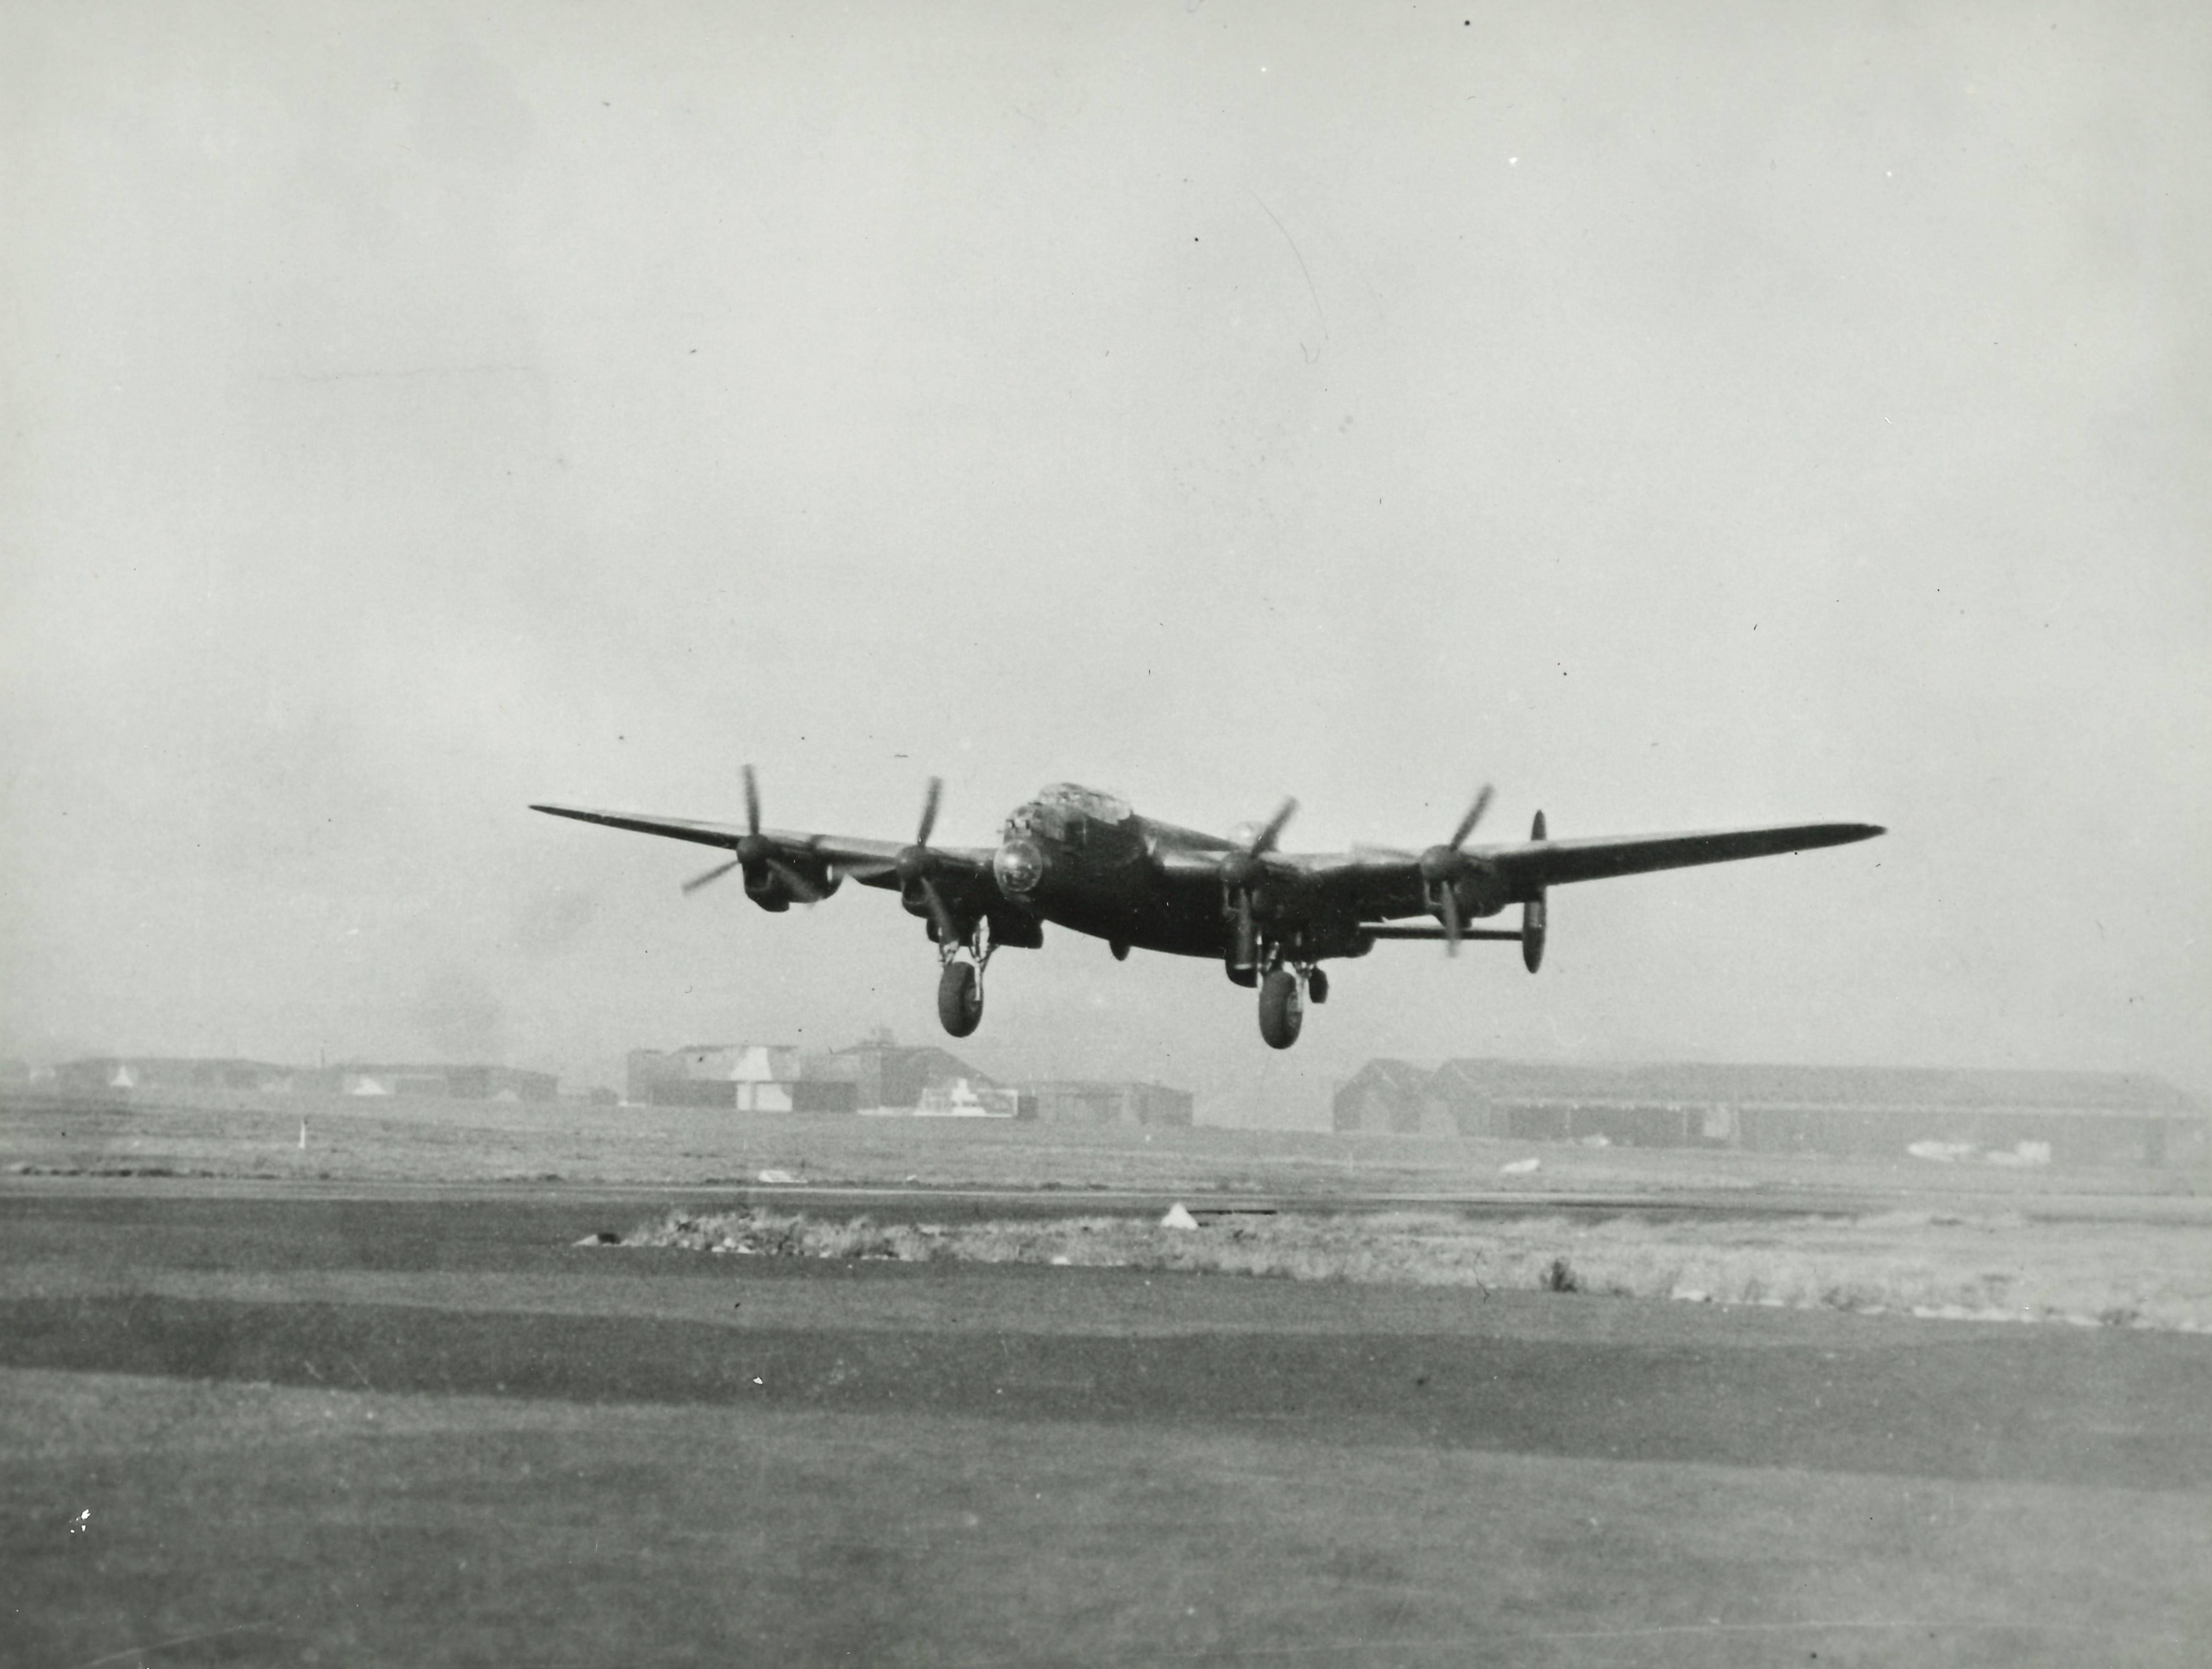 Photographie originale de Hawker Siddeley représentant le débarquement du bombardier de Lancaster pendant la Seconde Guerre mondiale